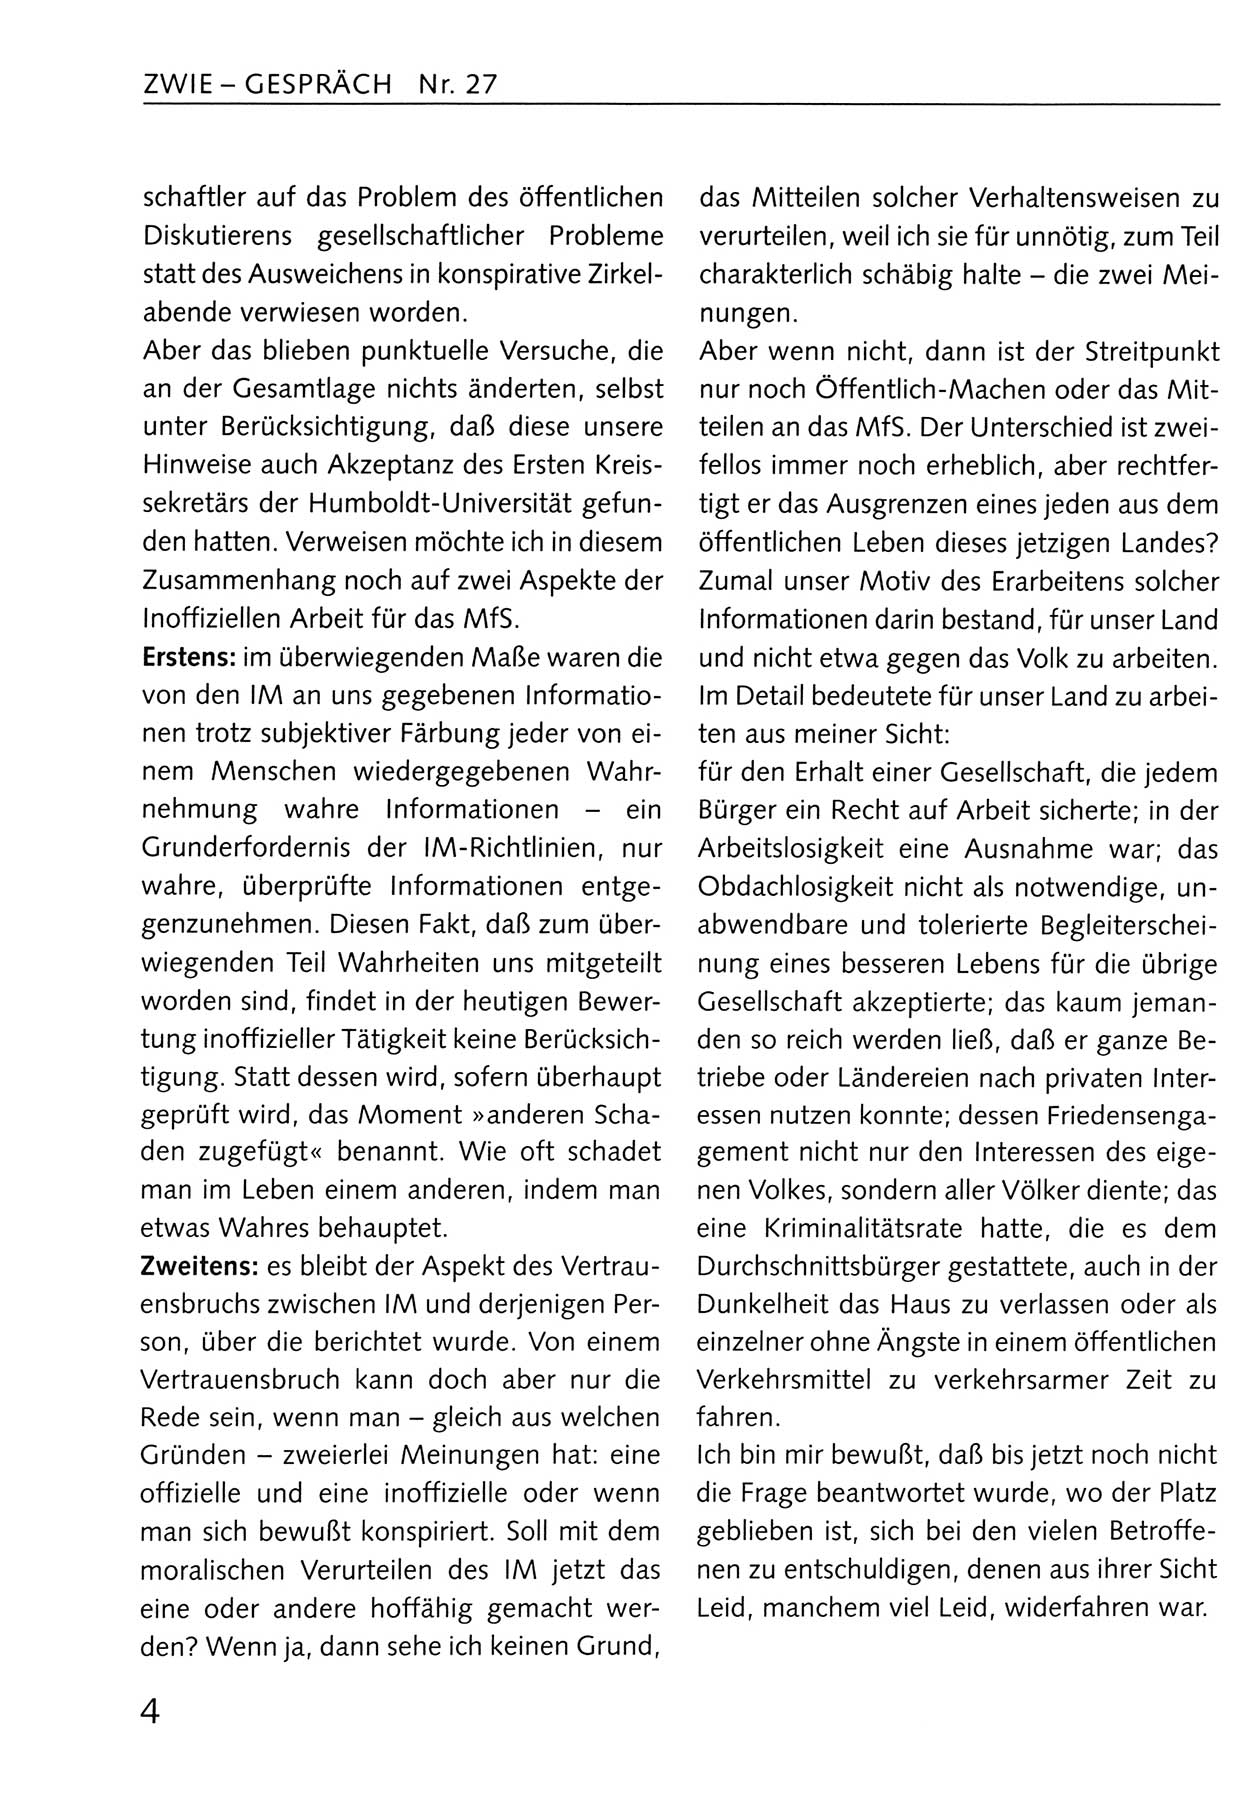 Zwie-Gespräch, Beiträge zum Umgang mit der Staatssicherheits-Vergangenheit [Deutsche Demokratische Republik (DDR)], Ausgabe Nr. 27, Berlin 1995, Seite 4 (Zwie-Gespr. Ausg. 27 1995, S. 4)